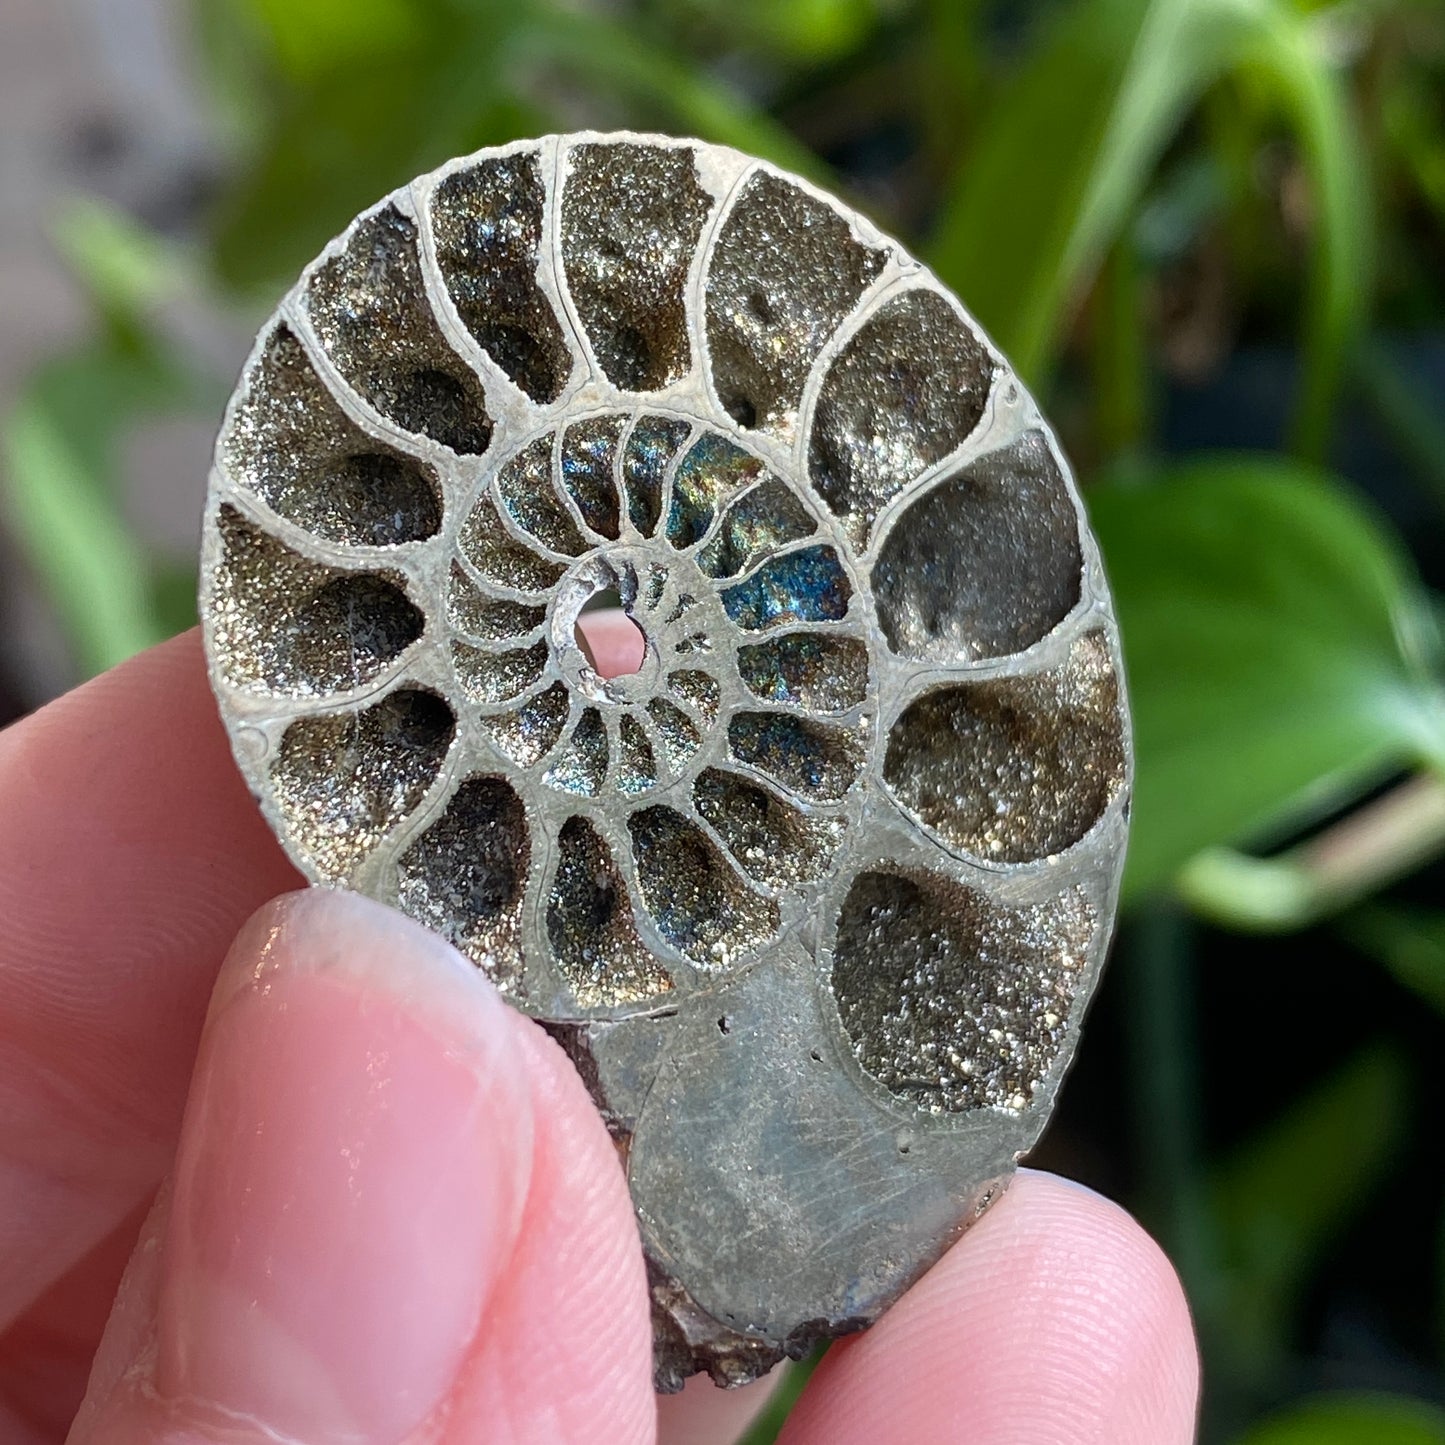 Pyritized Ammonite Fossil, Russia